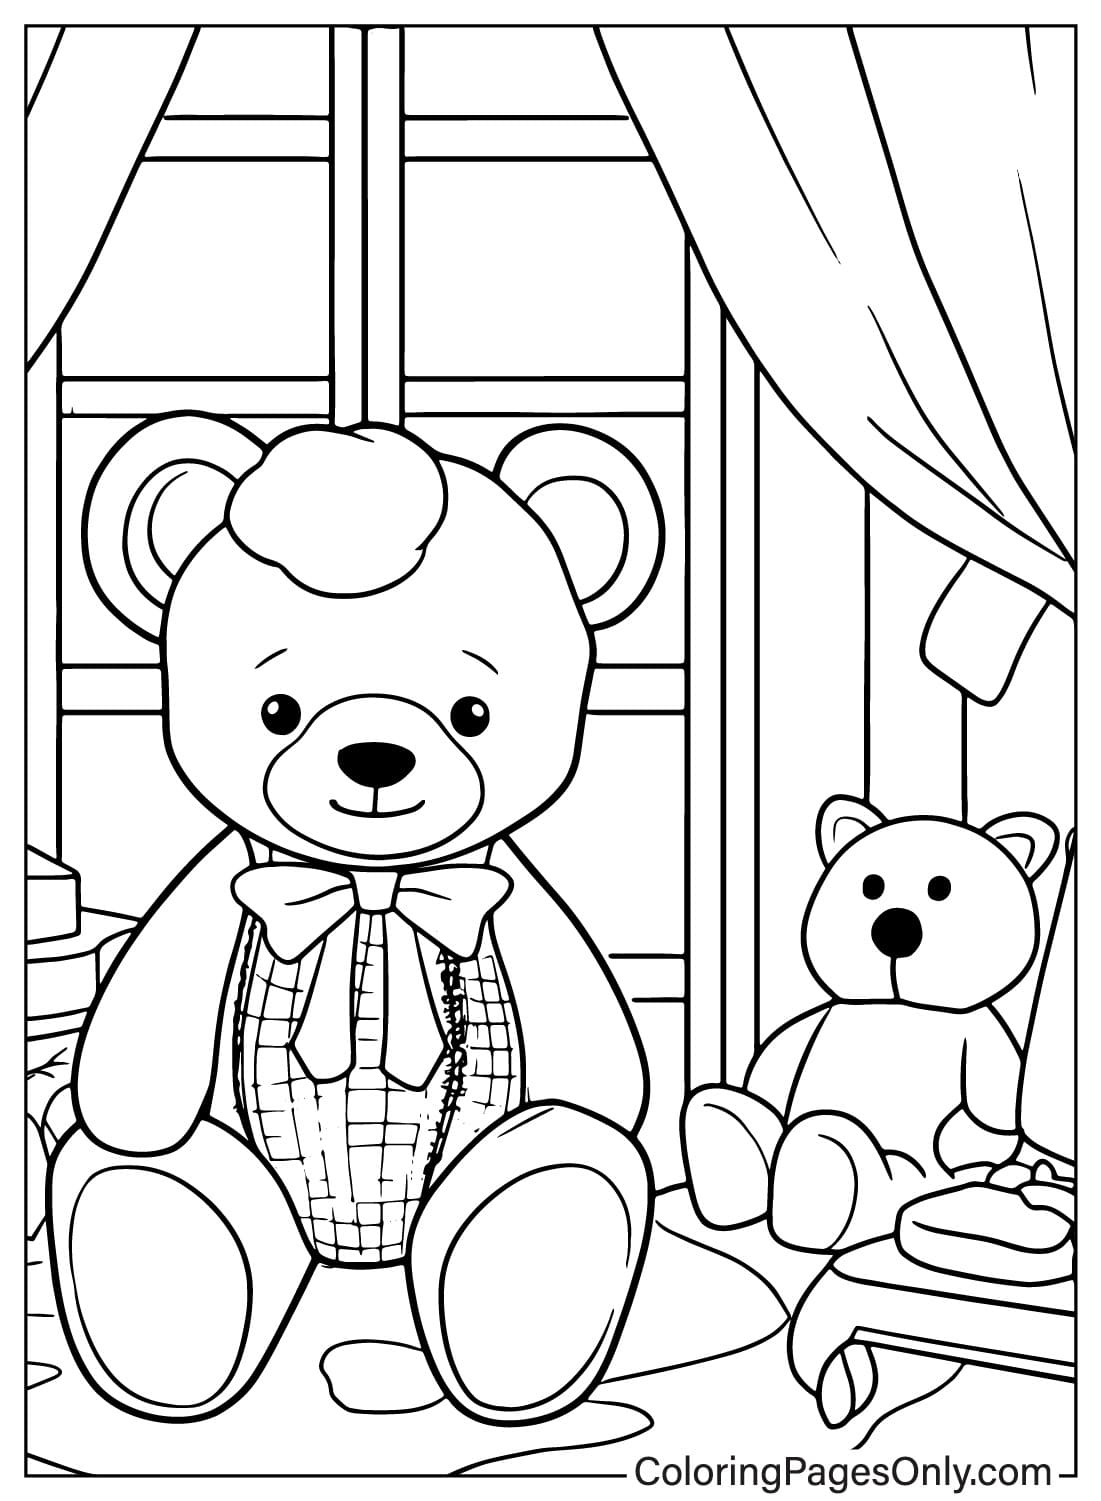 泰迪熊着色页可从泰迪熊免费打印